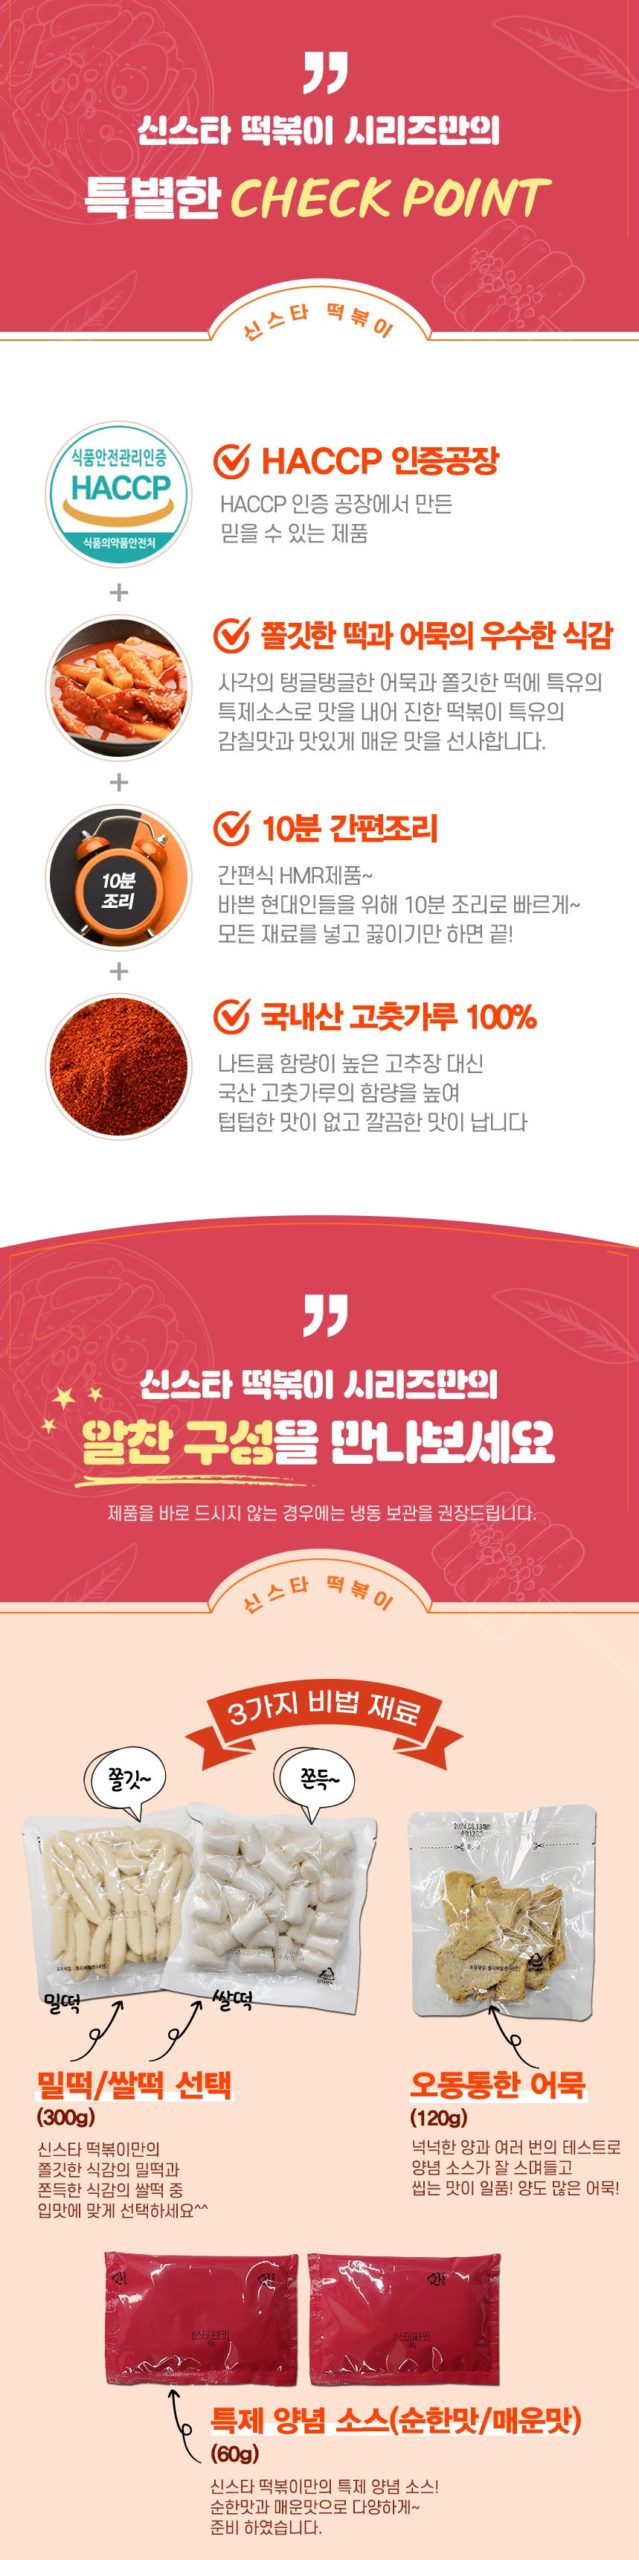 韓國食品-[Sinstar Wheat] Wheat Rice Cake Tteokbokki (Spicy) 500g